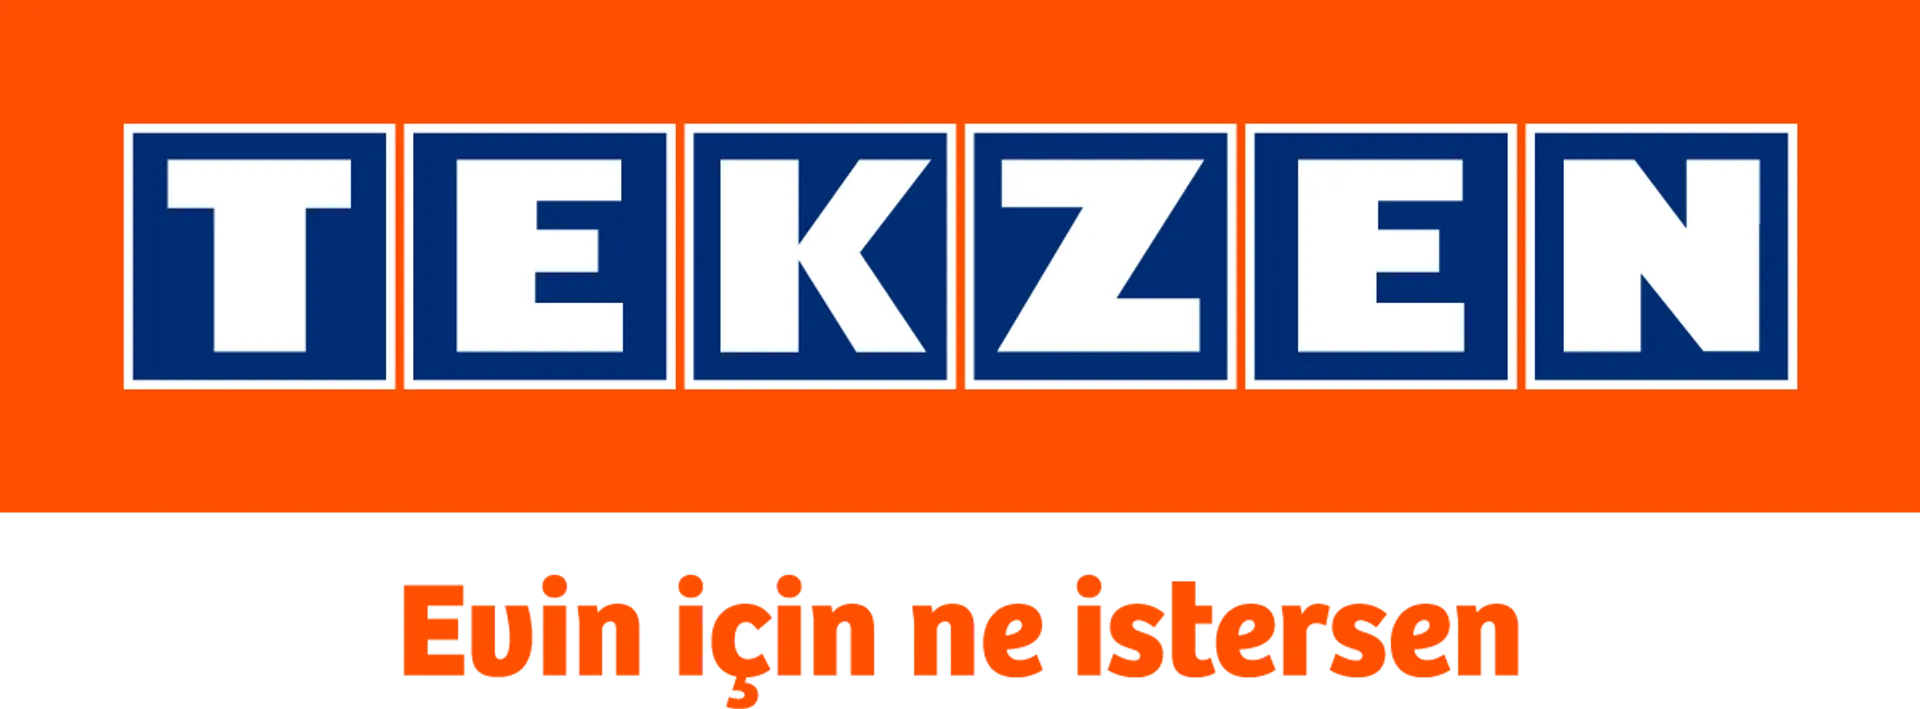 TEKZEN logo